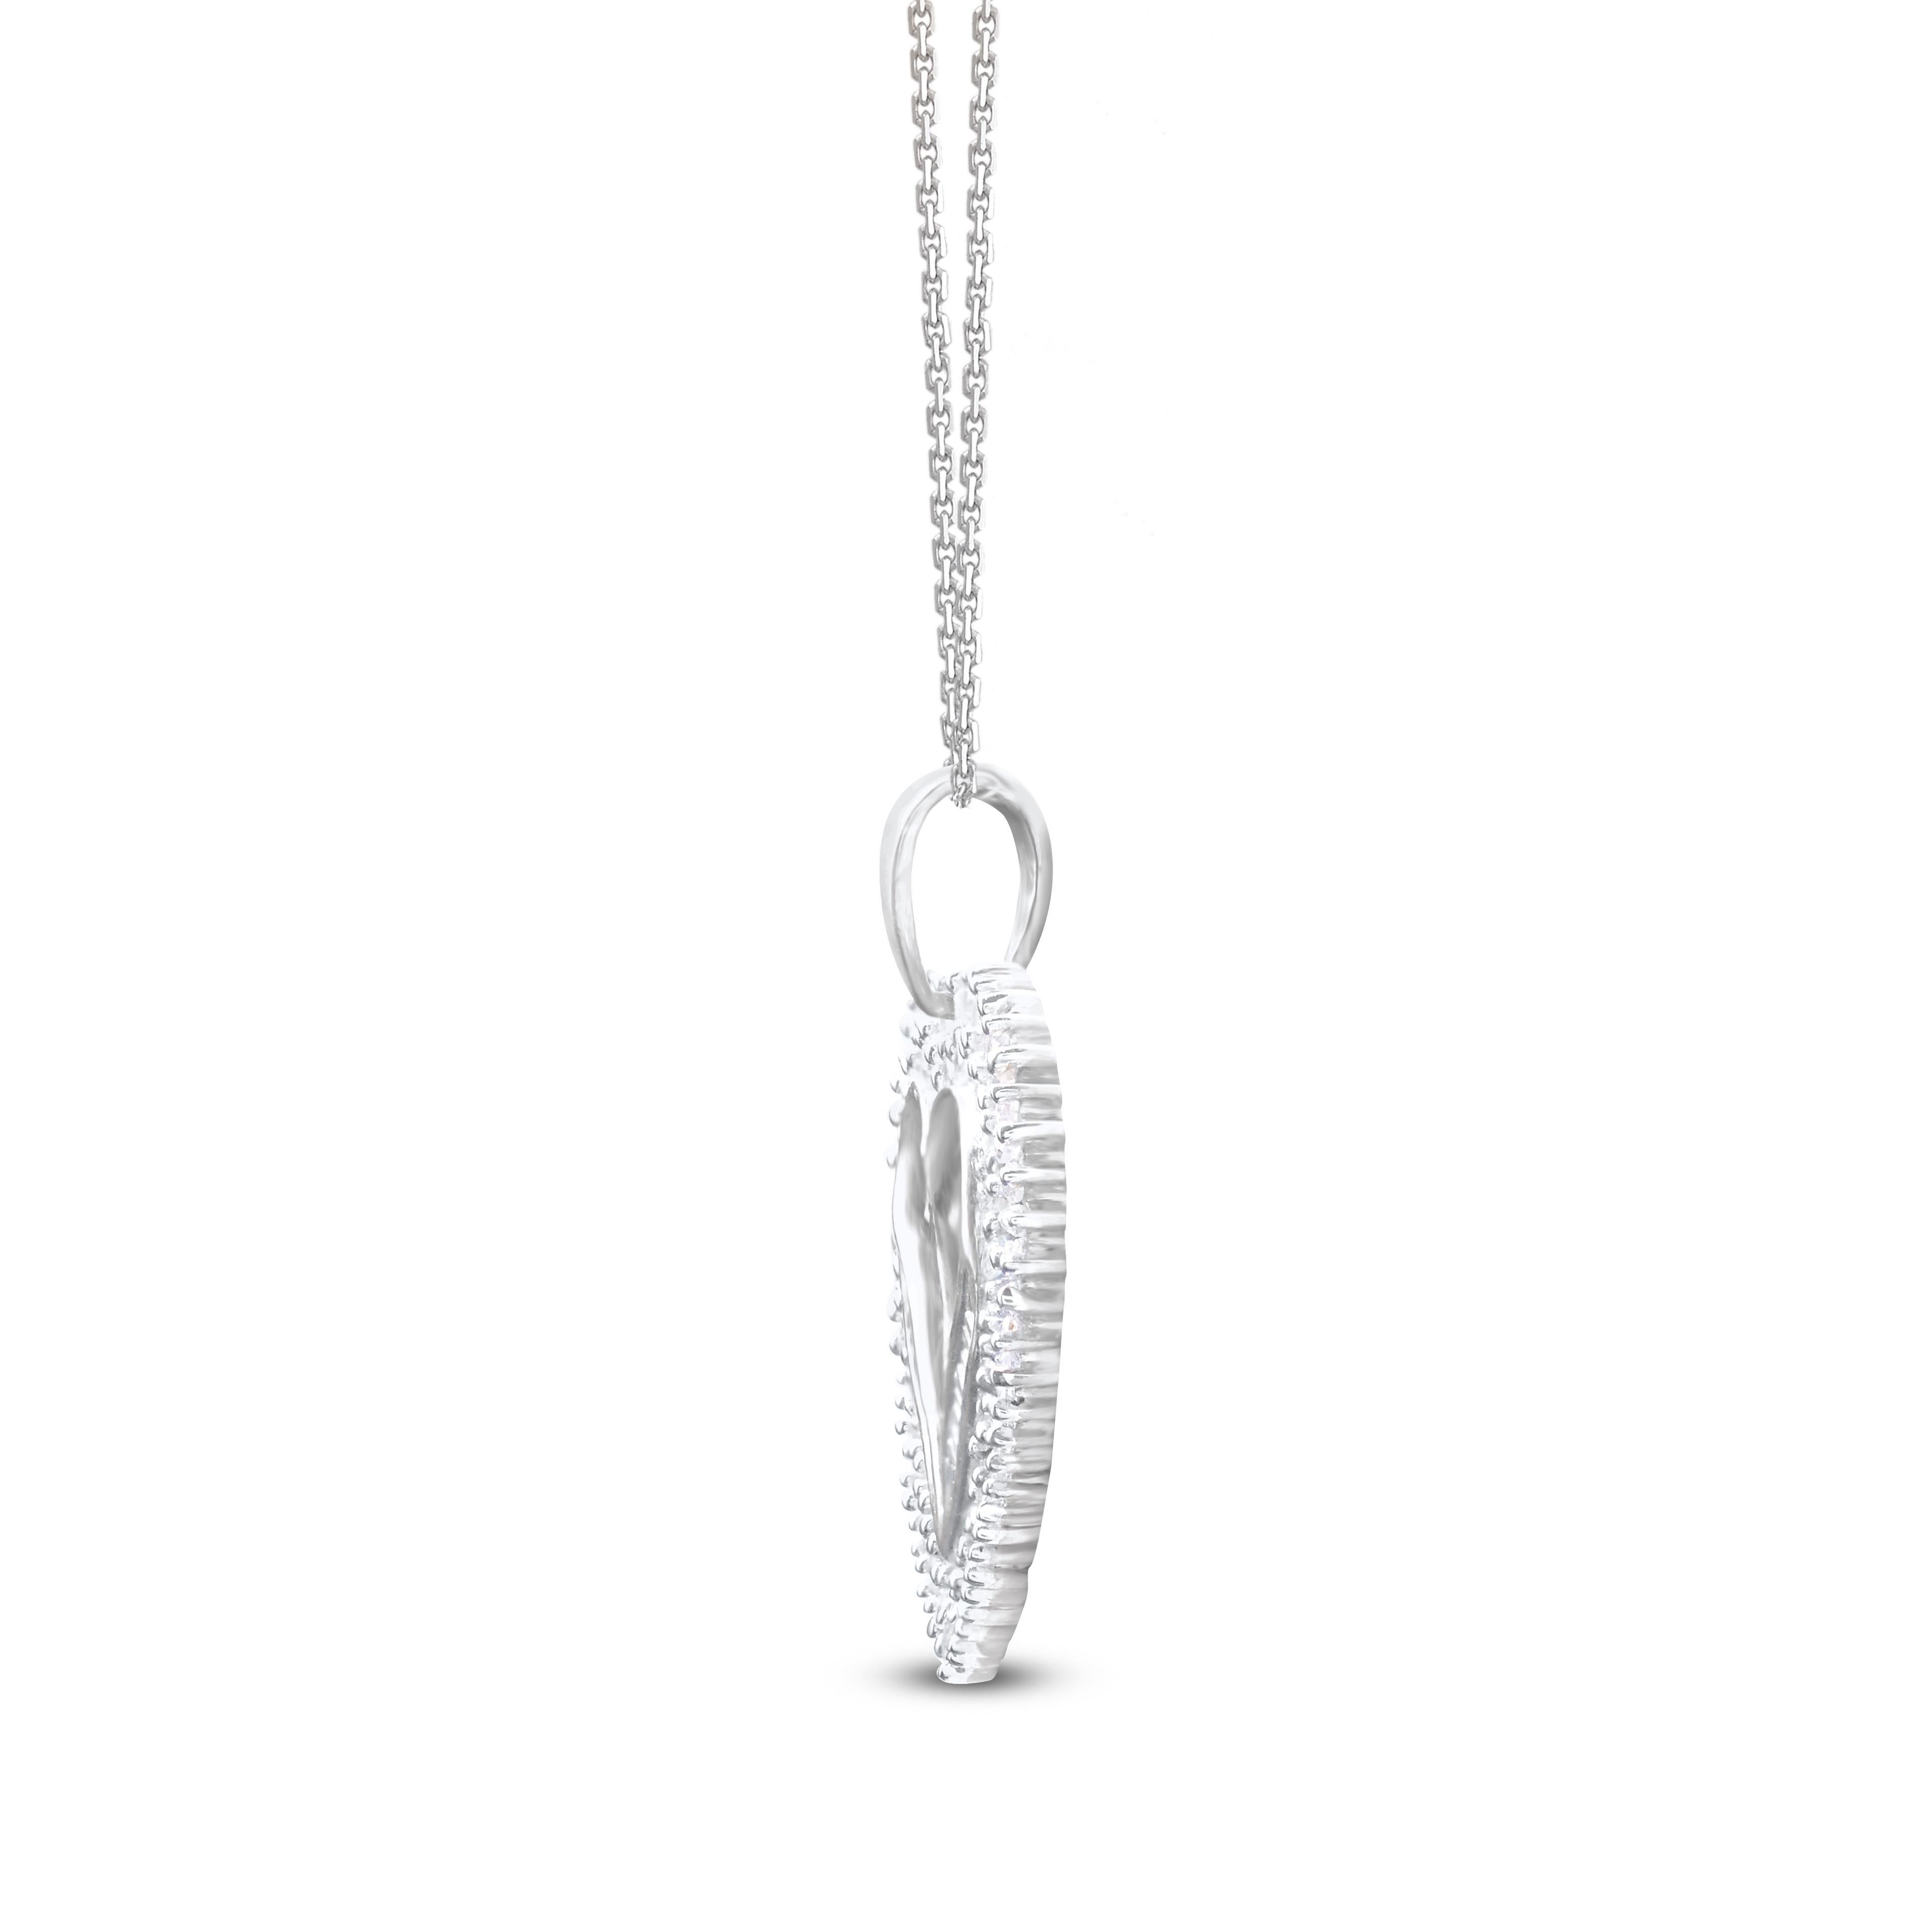 Romantic TJD 1.0 Carat Round & Baguette Diamond 14KT White Gold Heart Pendant Necklace For Sale